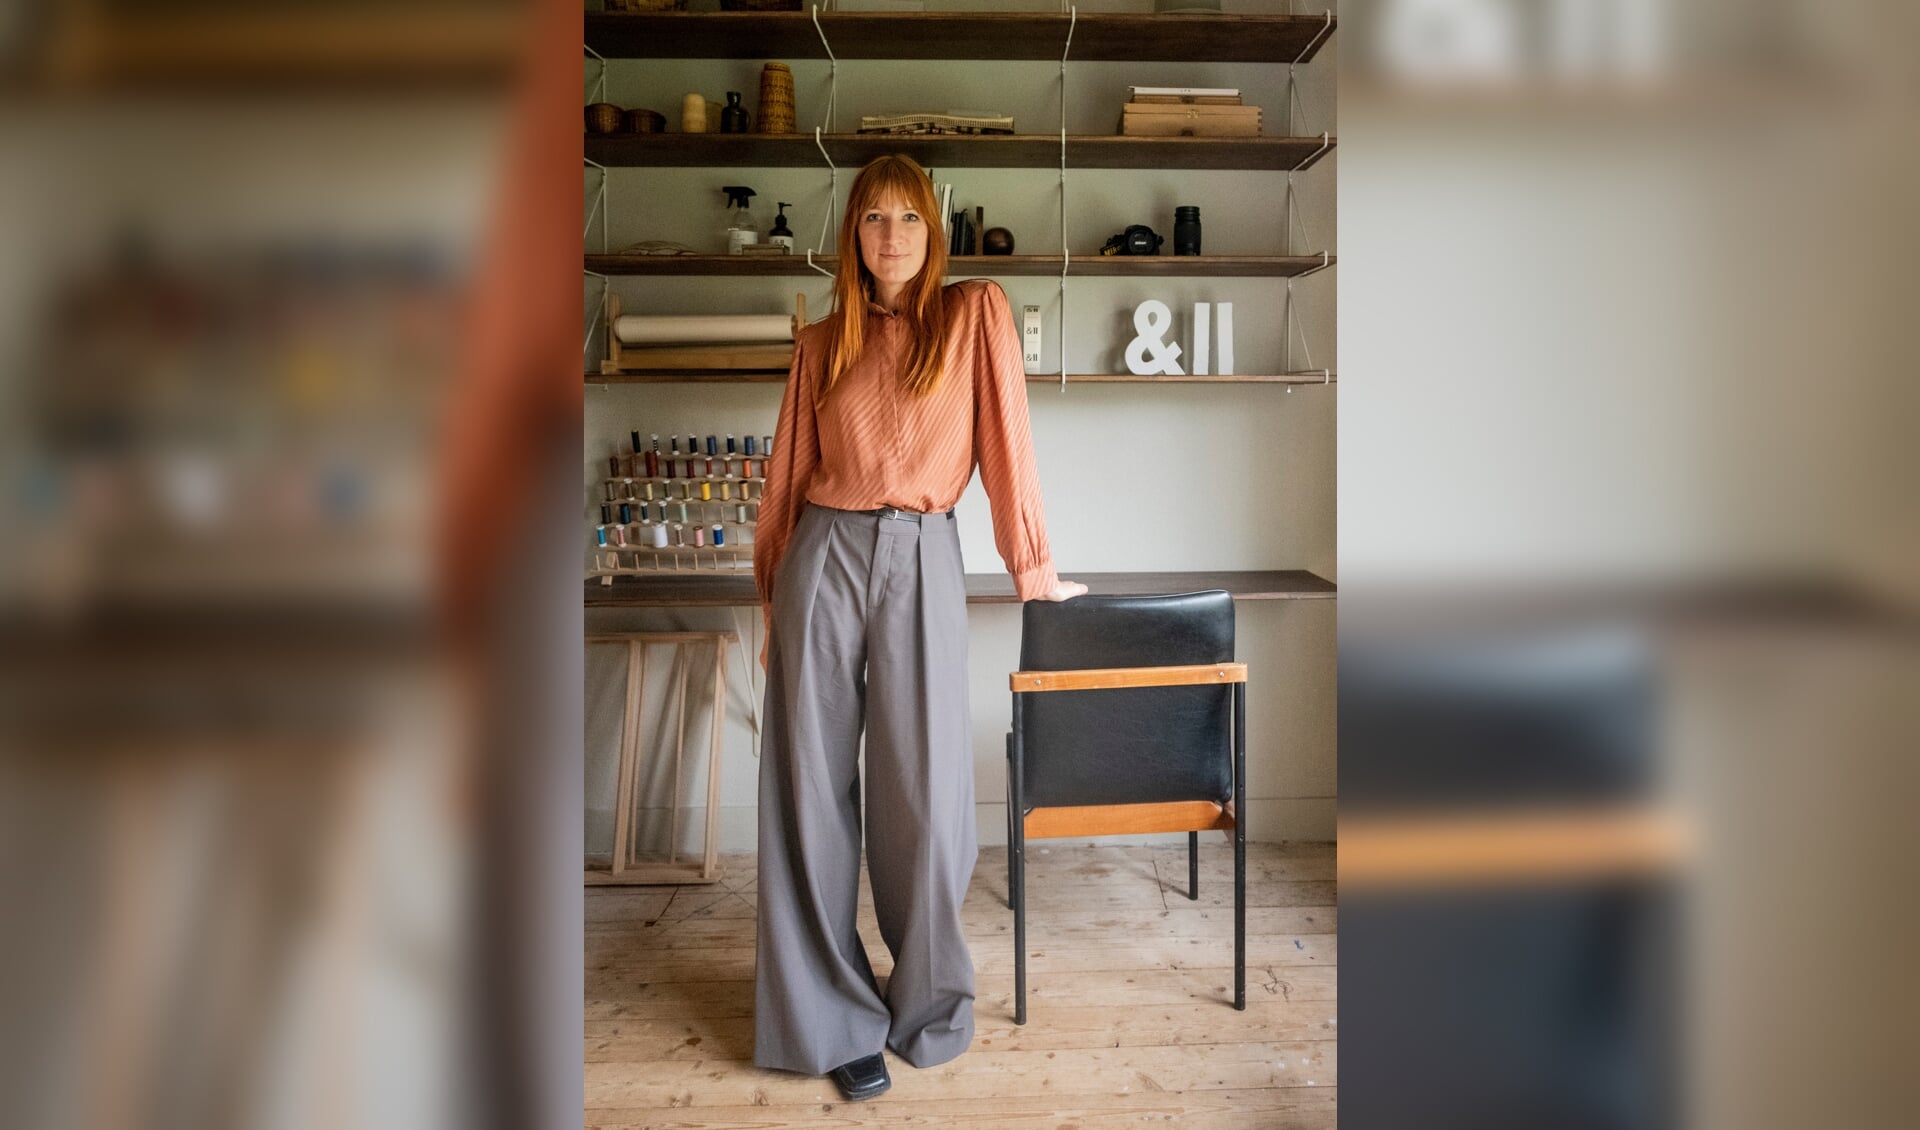 De grootste passie van Renee Ferron is vintage kleding. En die draagt ze zelf ook.